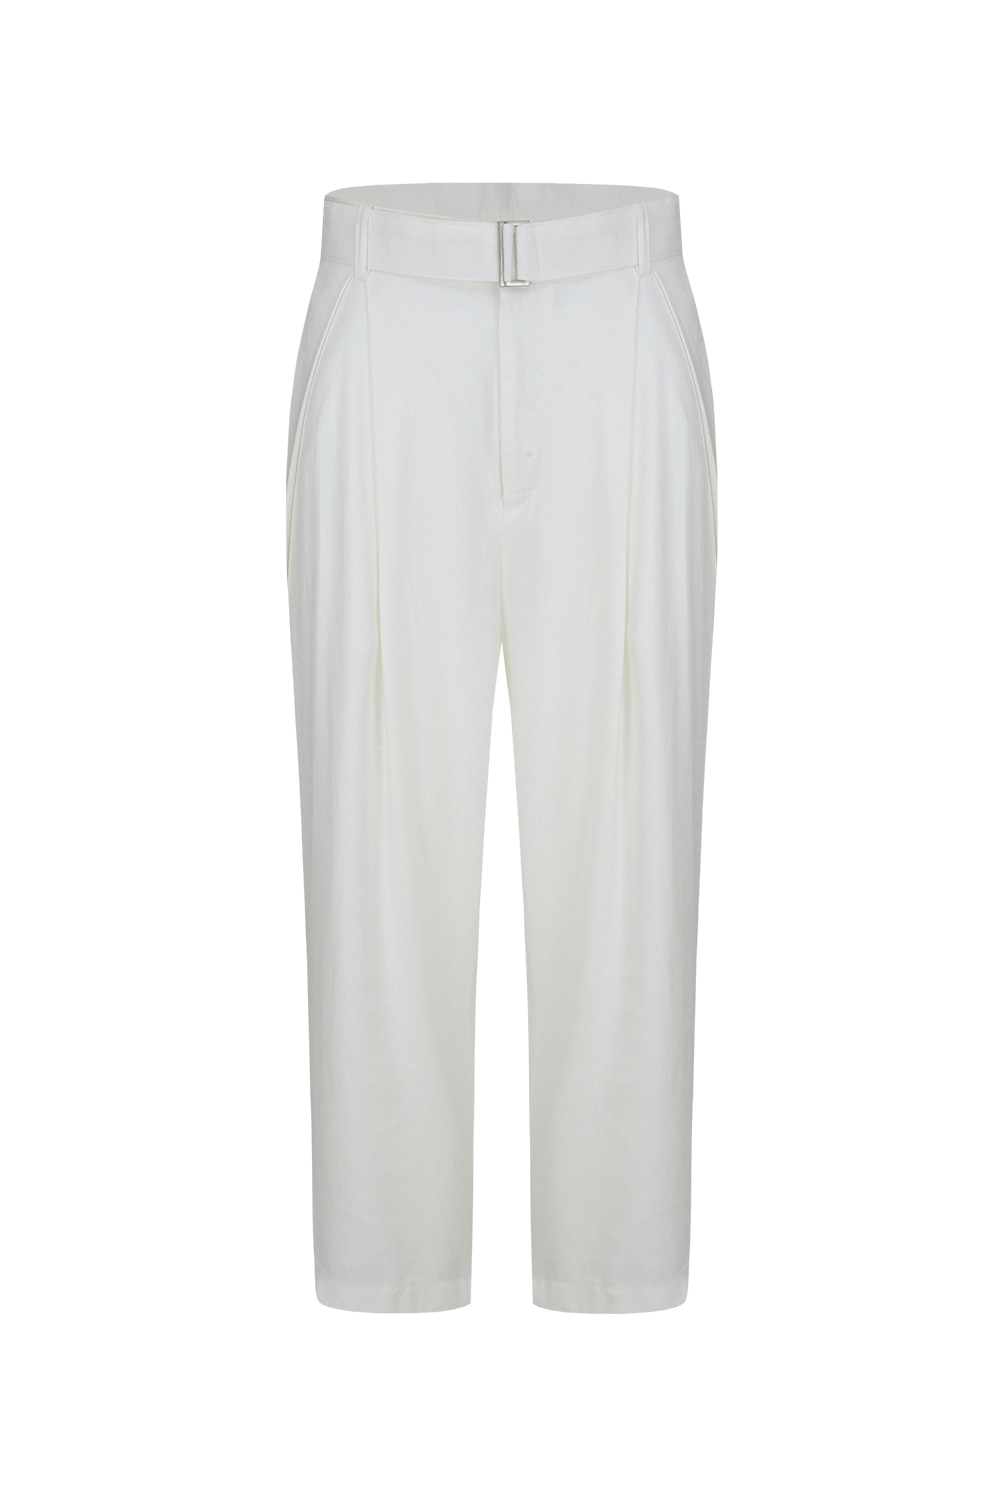 Bellobro crop linen pants (04)